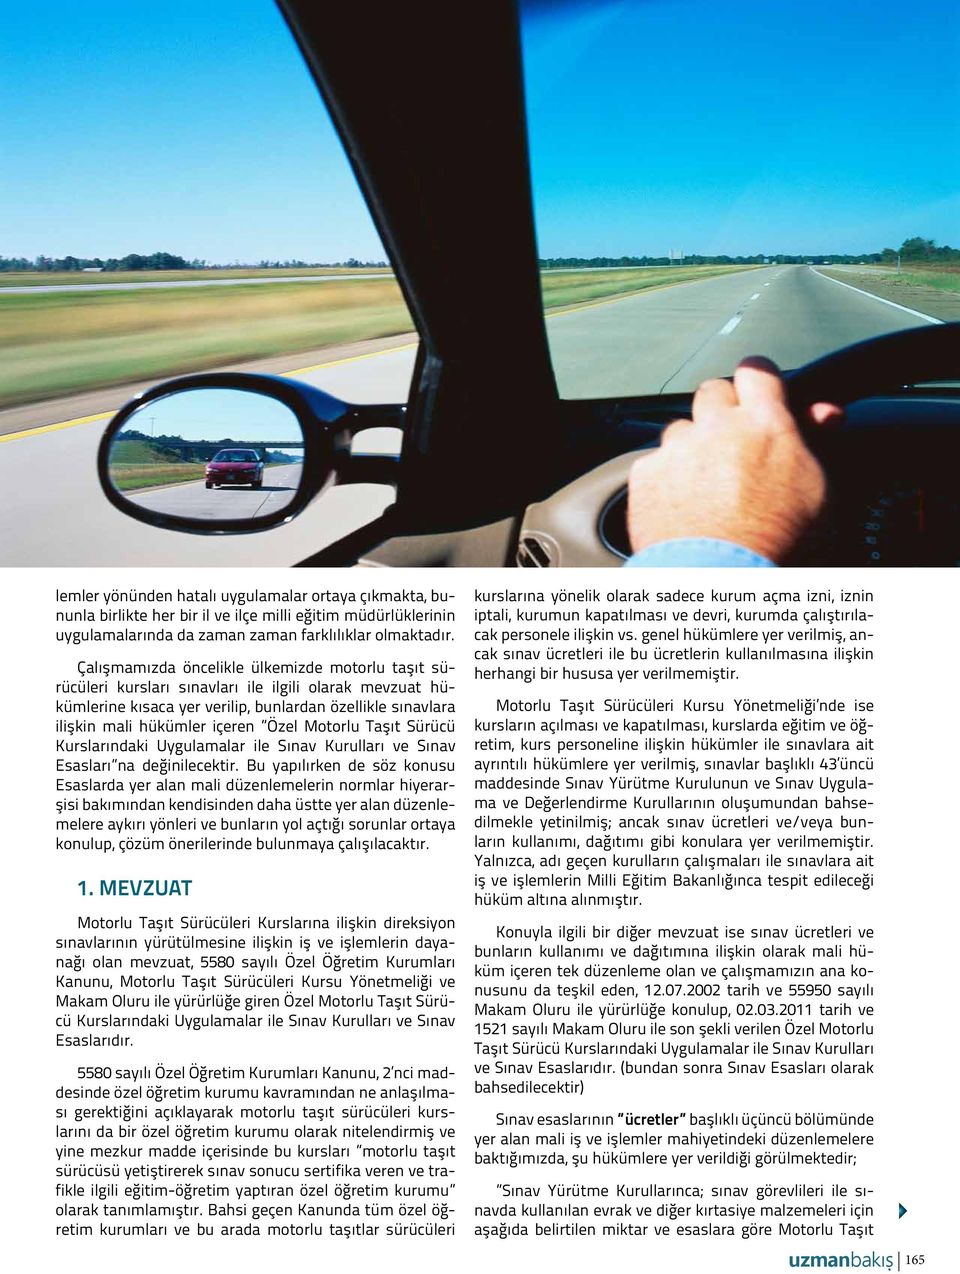 Motorlu Taşıt Sürücü Kurslarındaki Uygulamalar ile Sınav Kurulları ve Sınav Esasları na değinilecektir.